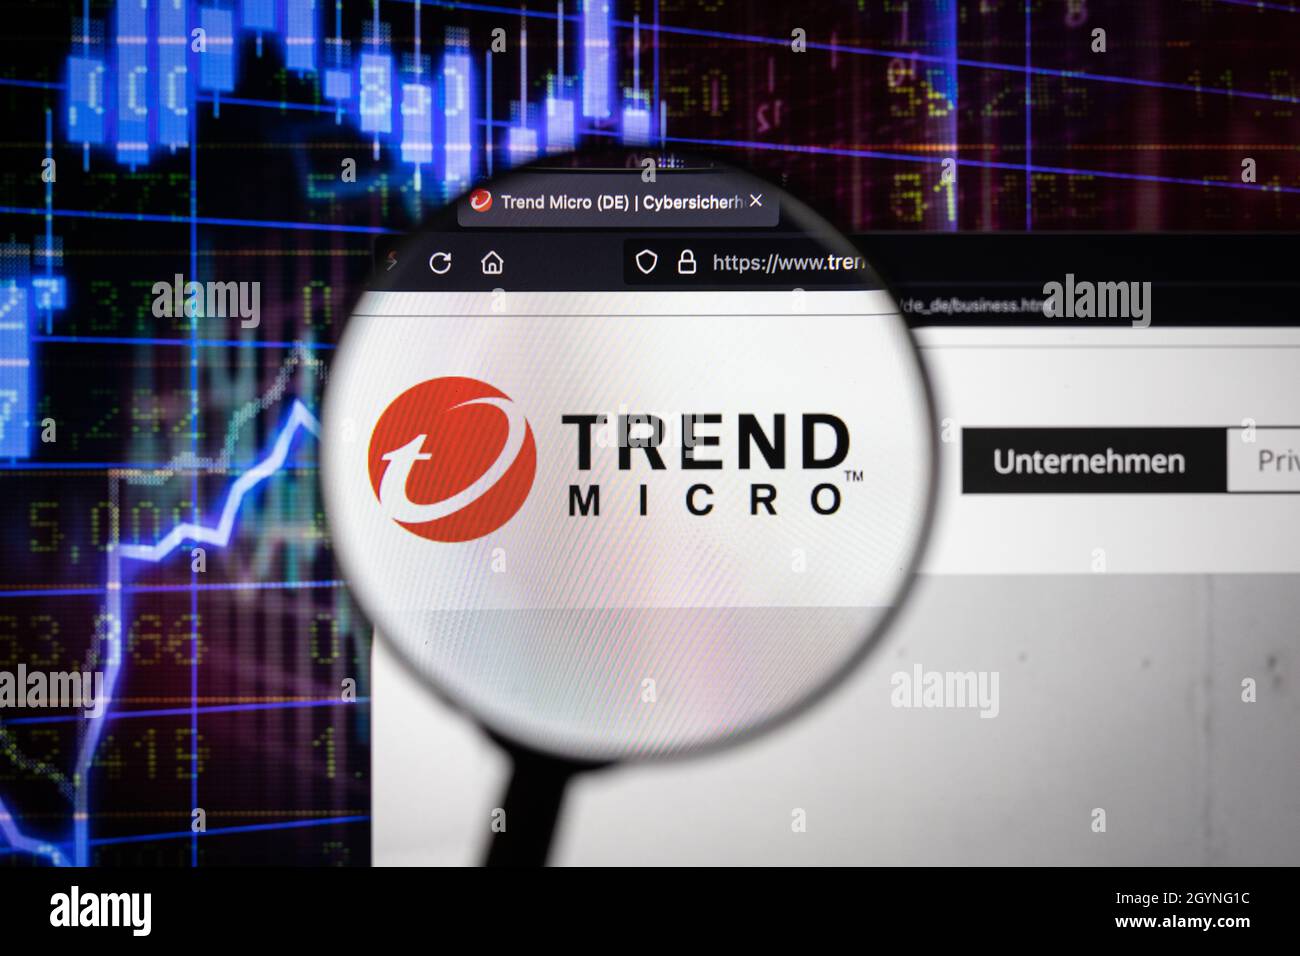 Logotipo de la empresa Trend Micro en un sitio web con una evolución borrosa del mercado de valores en segundo plano, visto en una pantalla de ordenador a través de una lupa Foto de stock